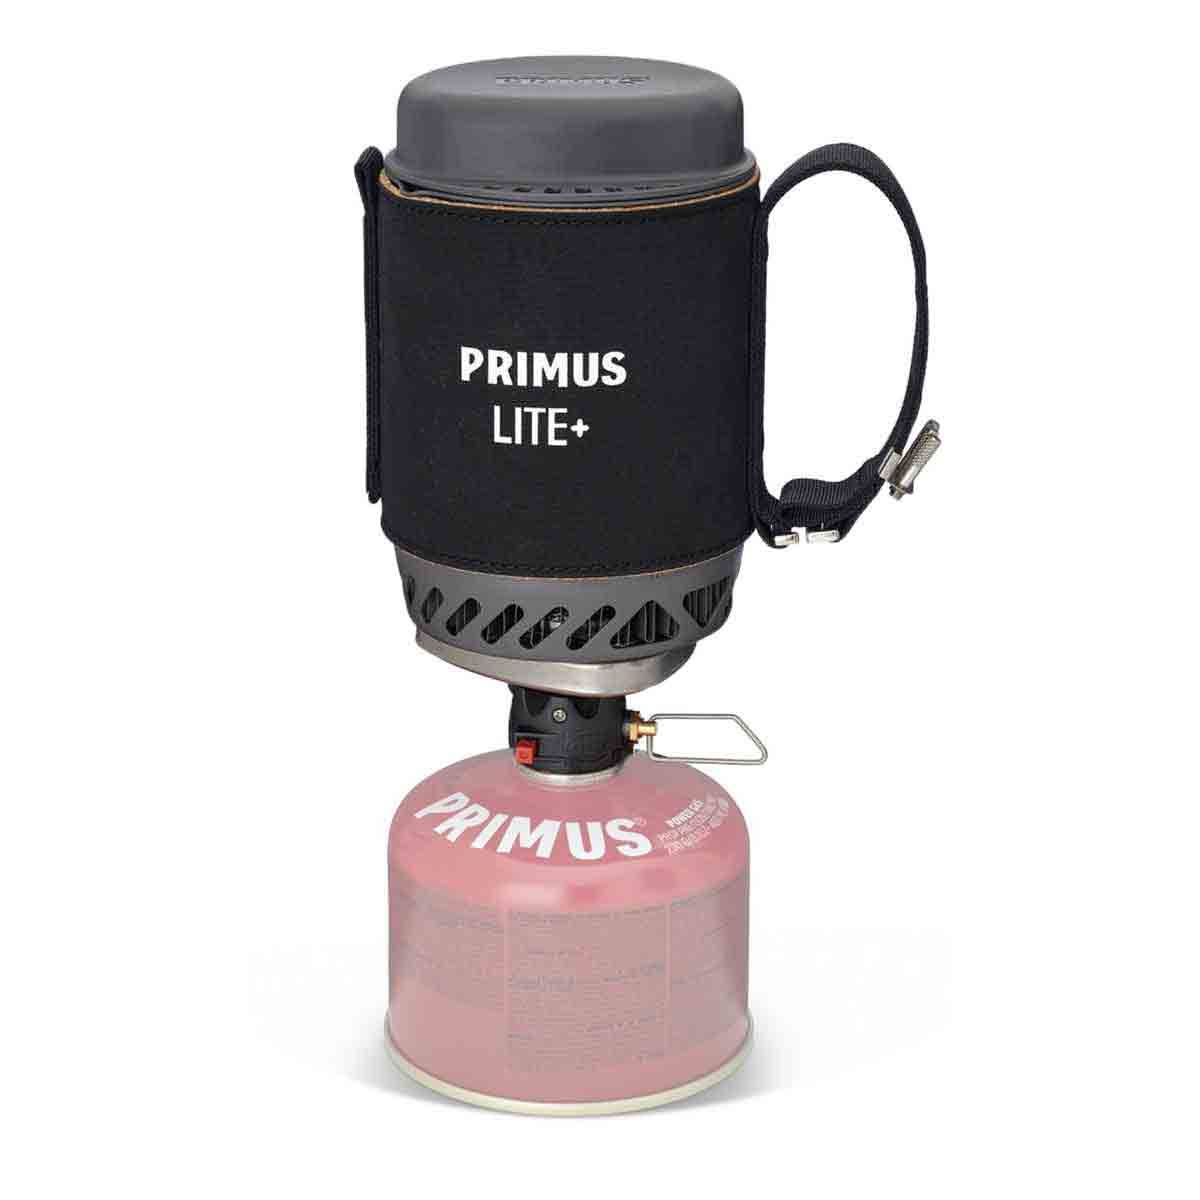 Primus réchaud à gaz lite+ noir